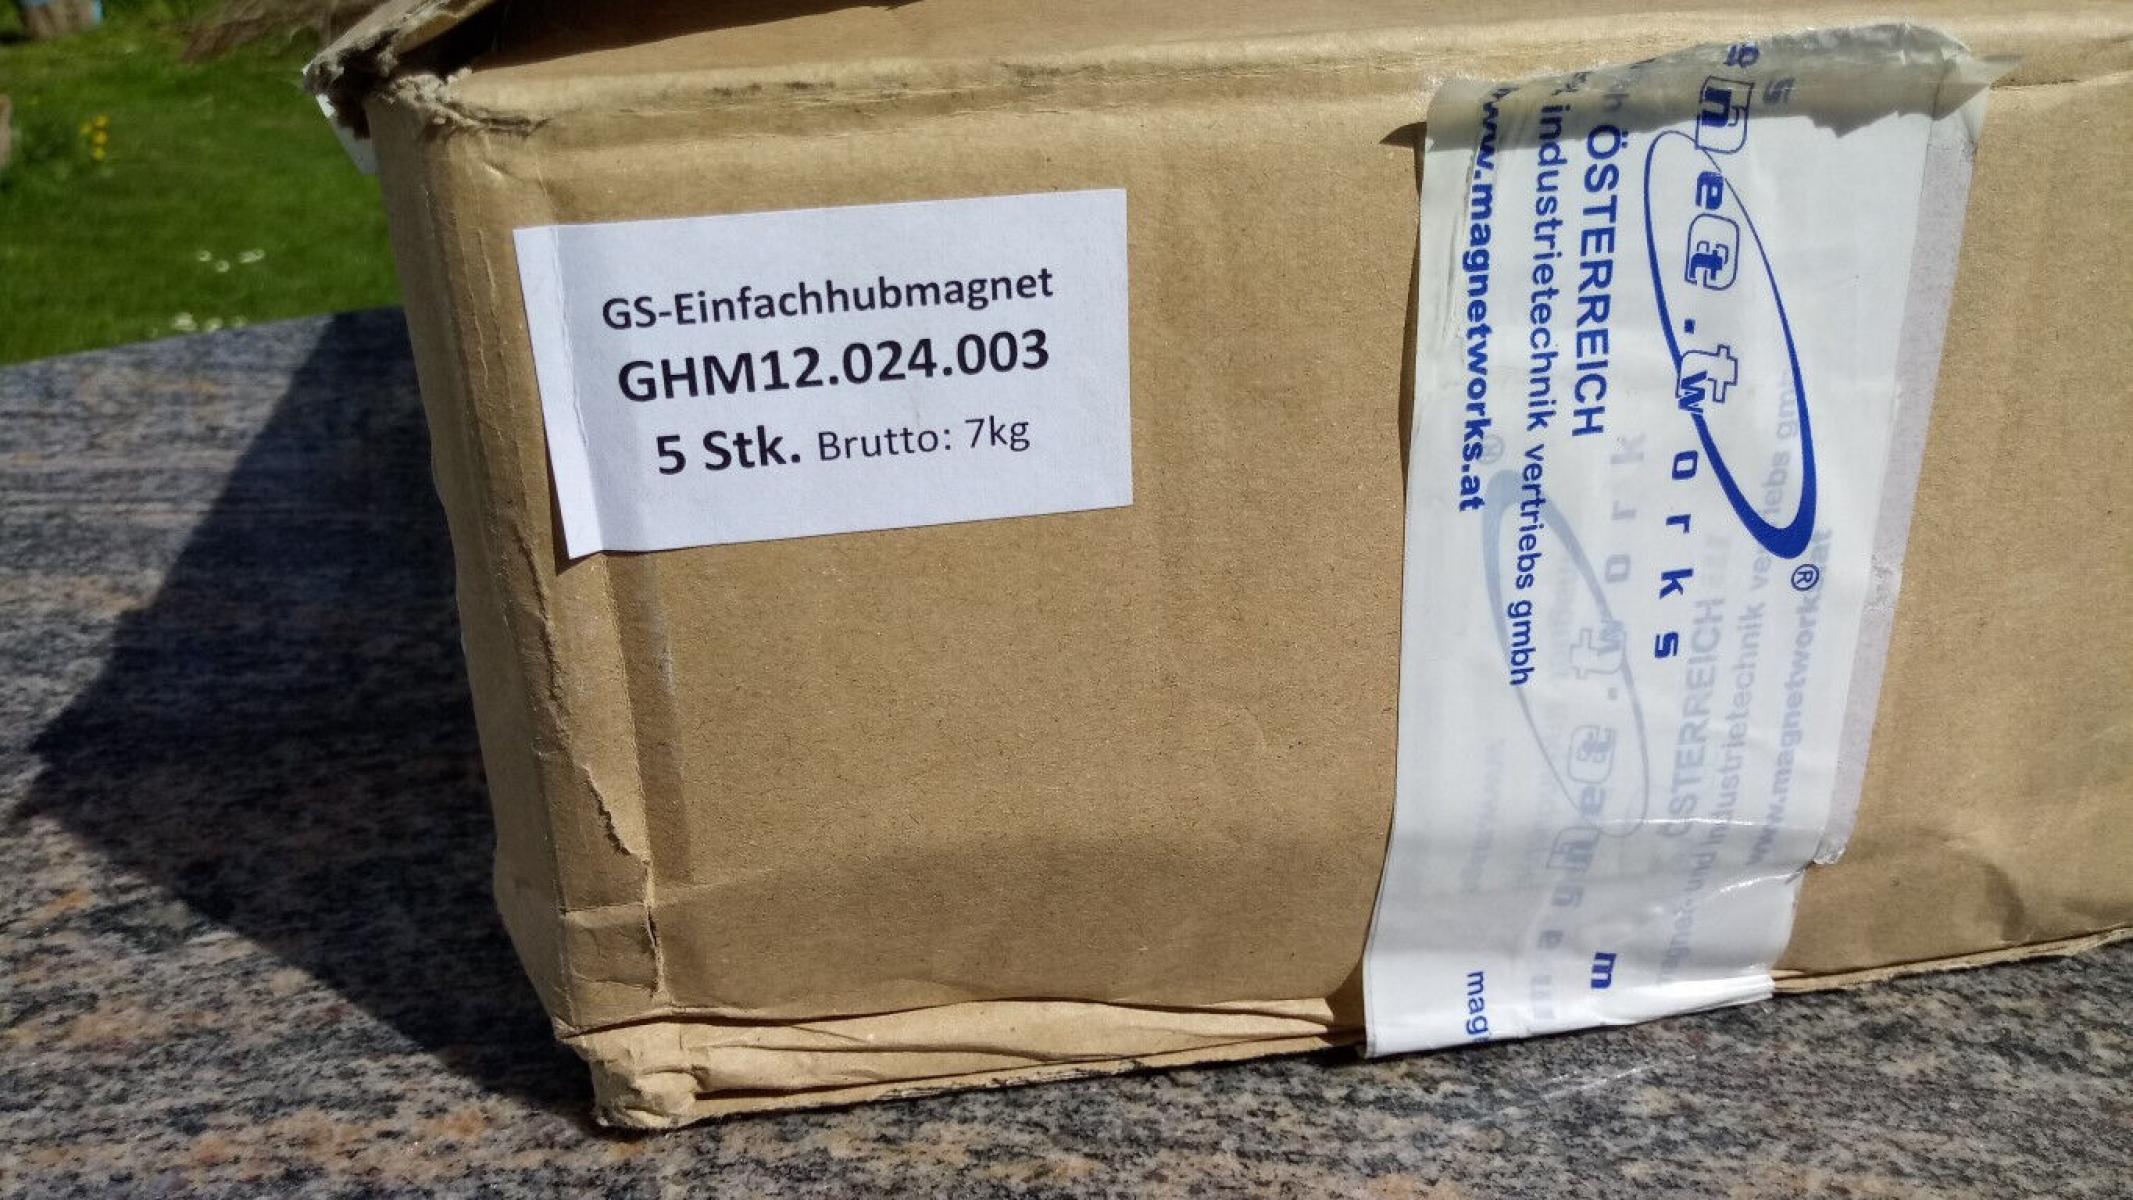 GS Einfachhubmagnet mit Rückstellfeder und Gabel GHM 12.024.003 24VDC 100%ED 26W, € 59,- (8130 Frohnleiten)